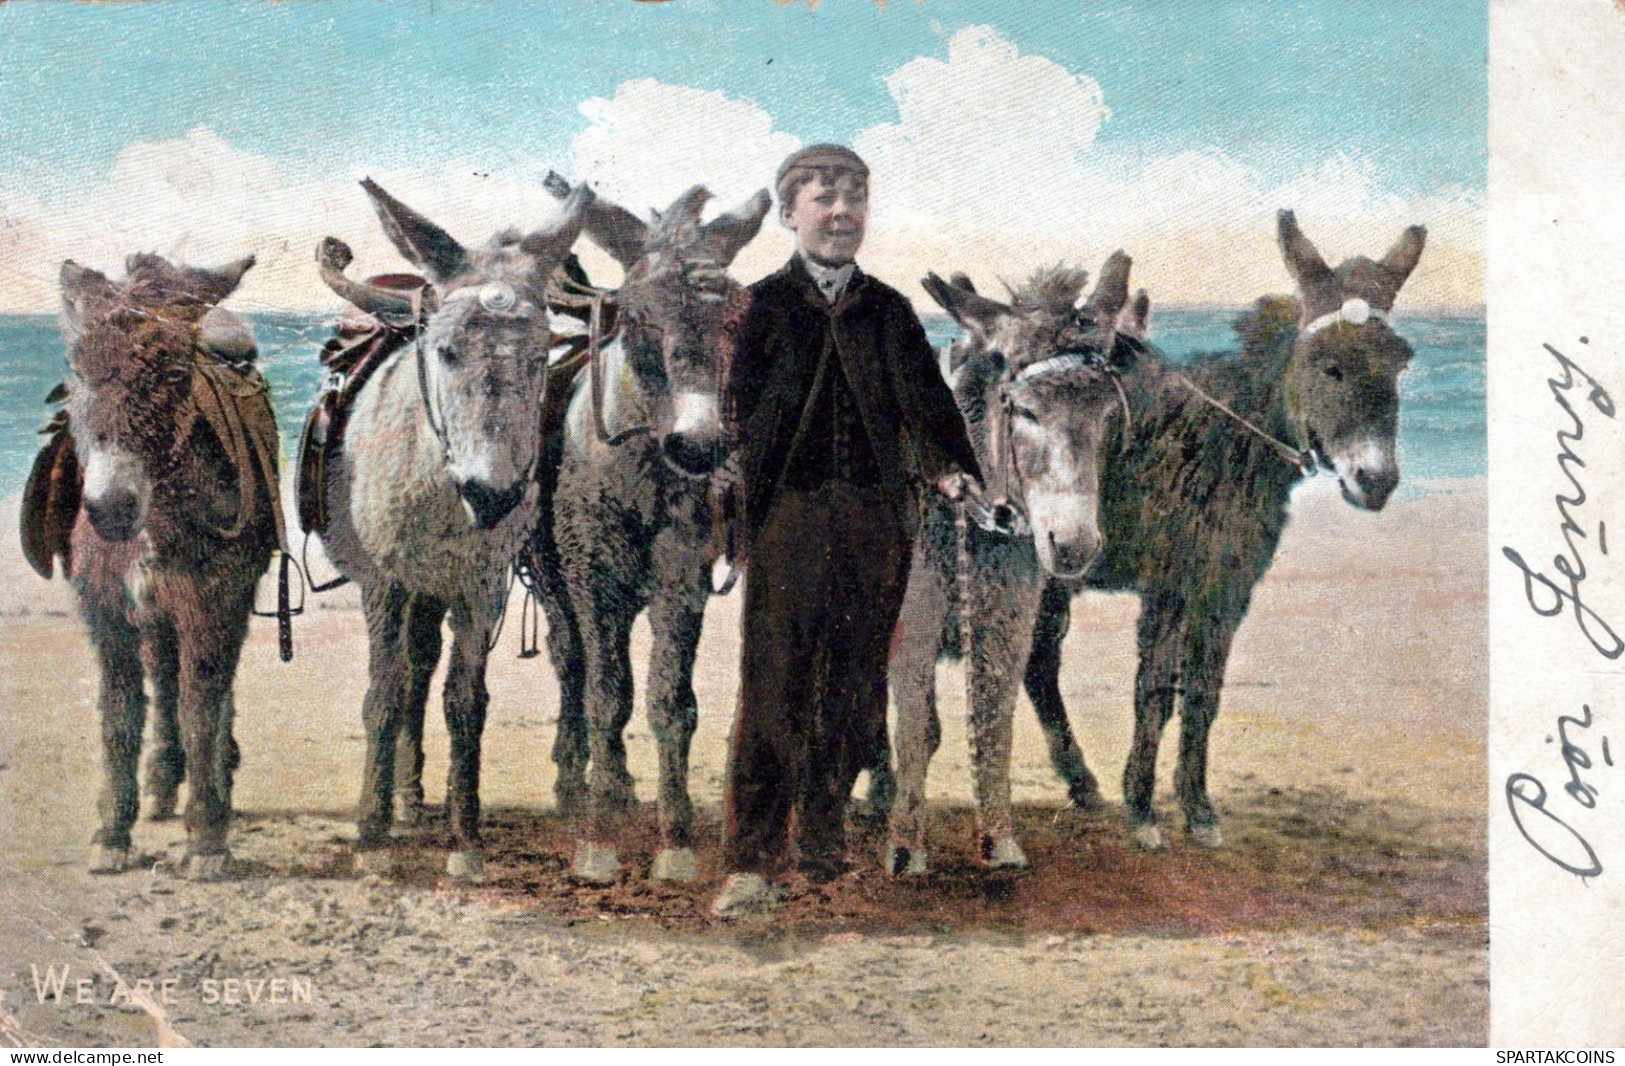 ESEL Tiere Kinder Vintage Antik Alt CPA Ansichtskarte Postkarte #PAA332.DE - Esel